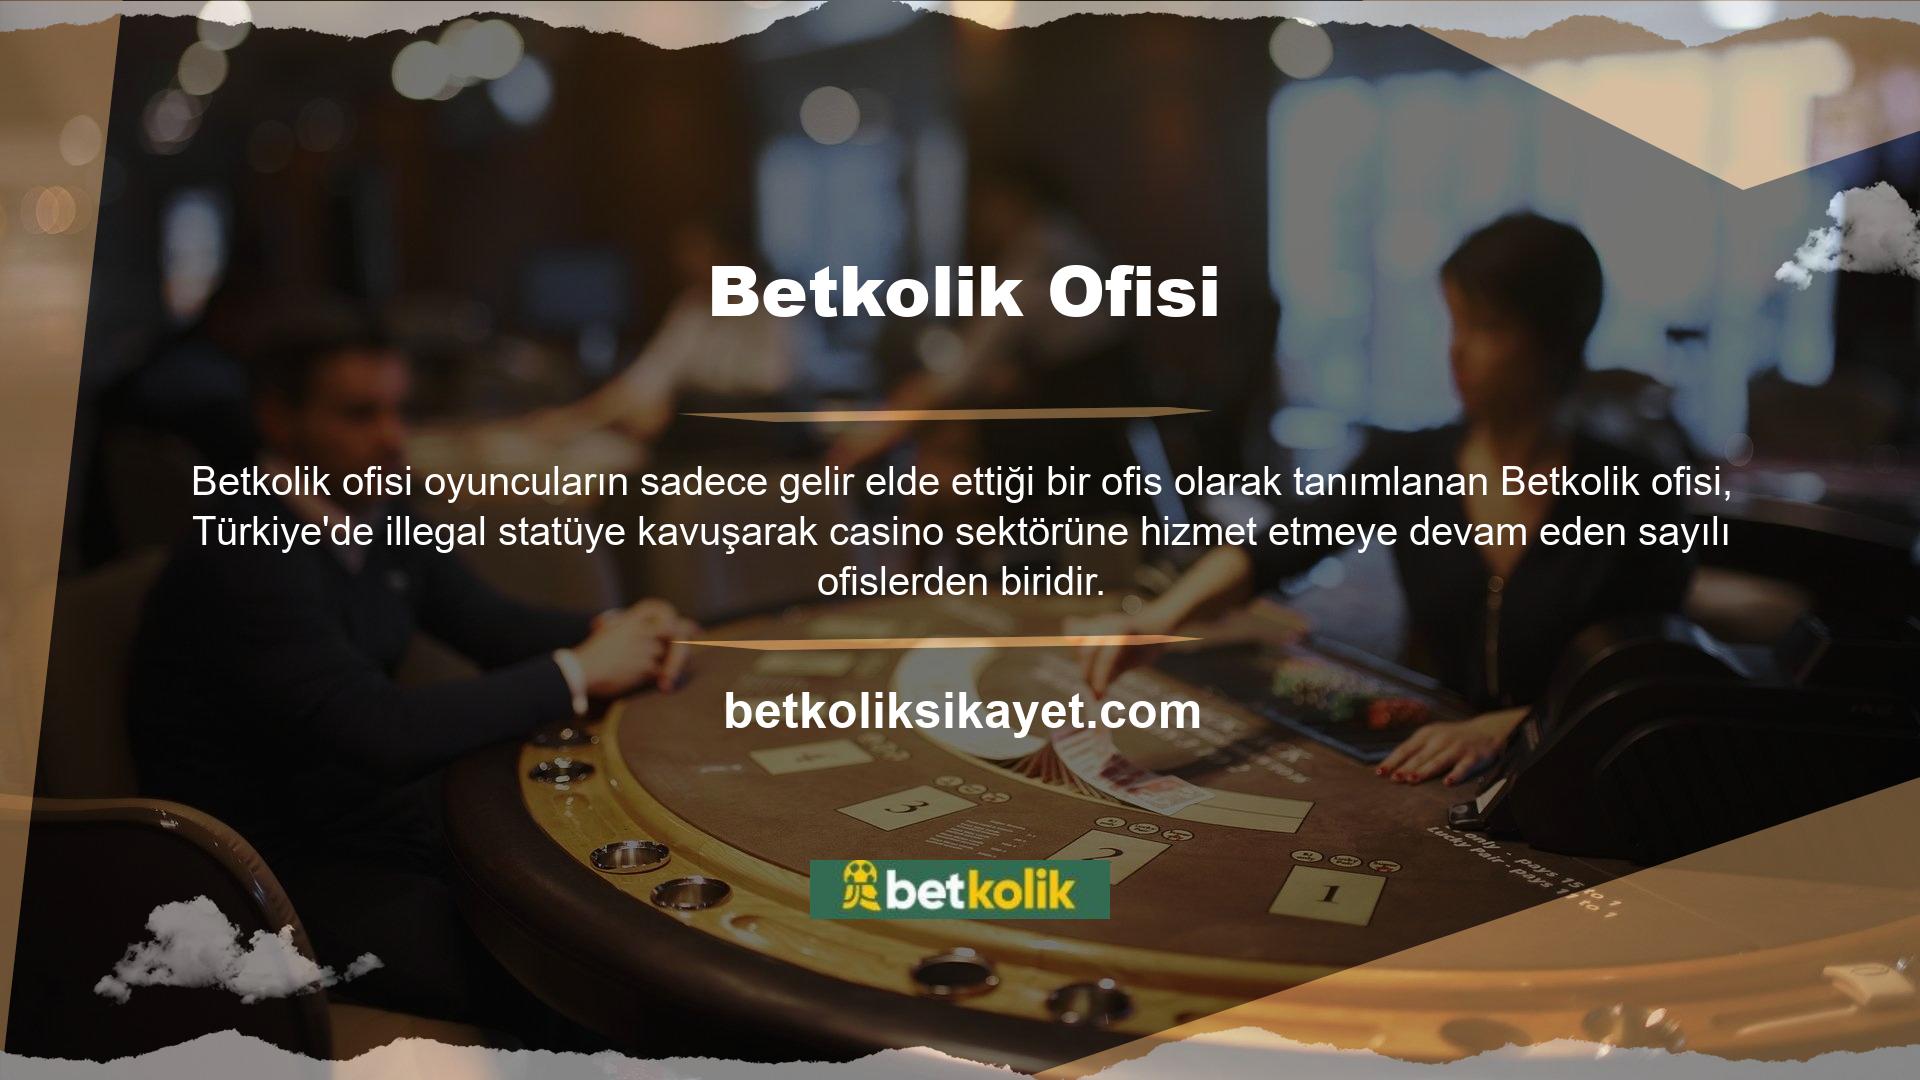 Türkiye'de oyun severler tarafından görülen site içeriğinde üyelik programını başarıyla tamamlayan oyuncular, sitede eğlenceli ve kaliteli bir deneyime başlayabilirler